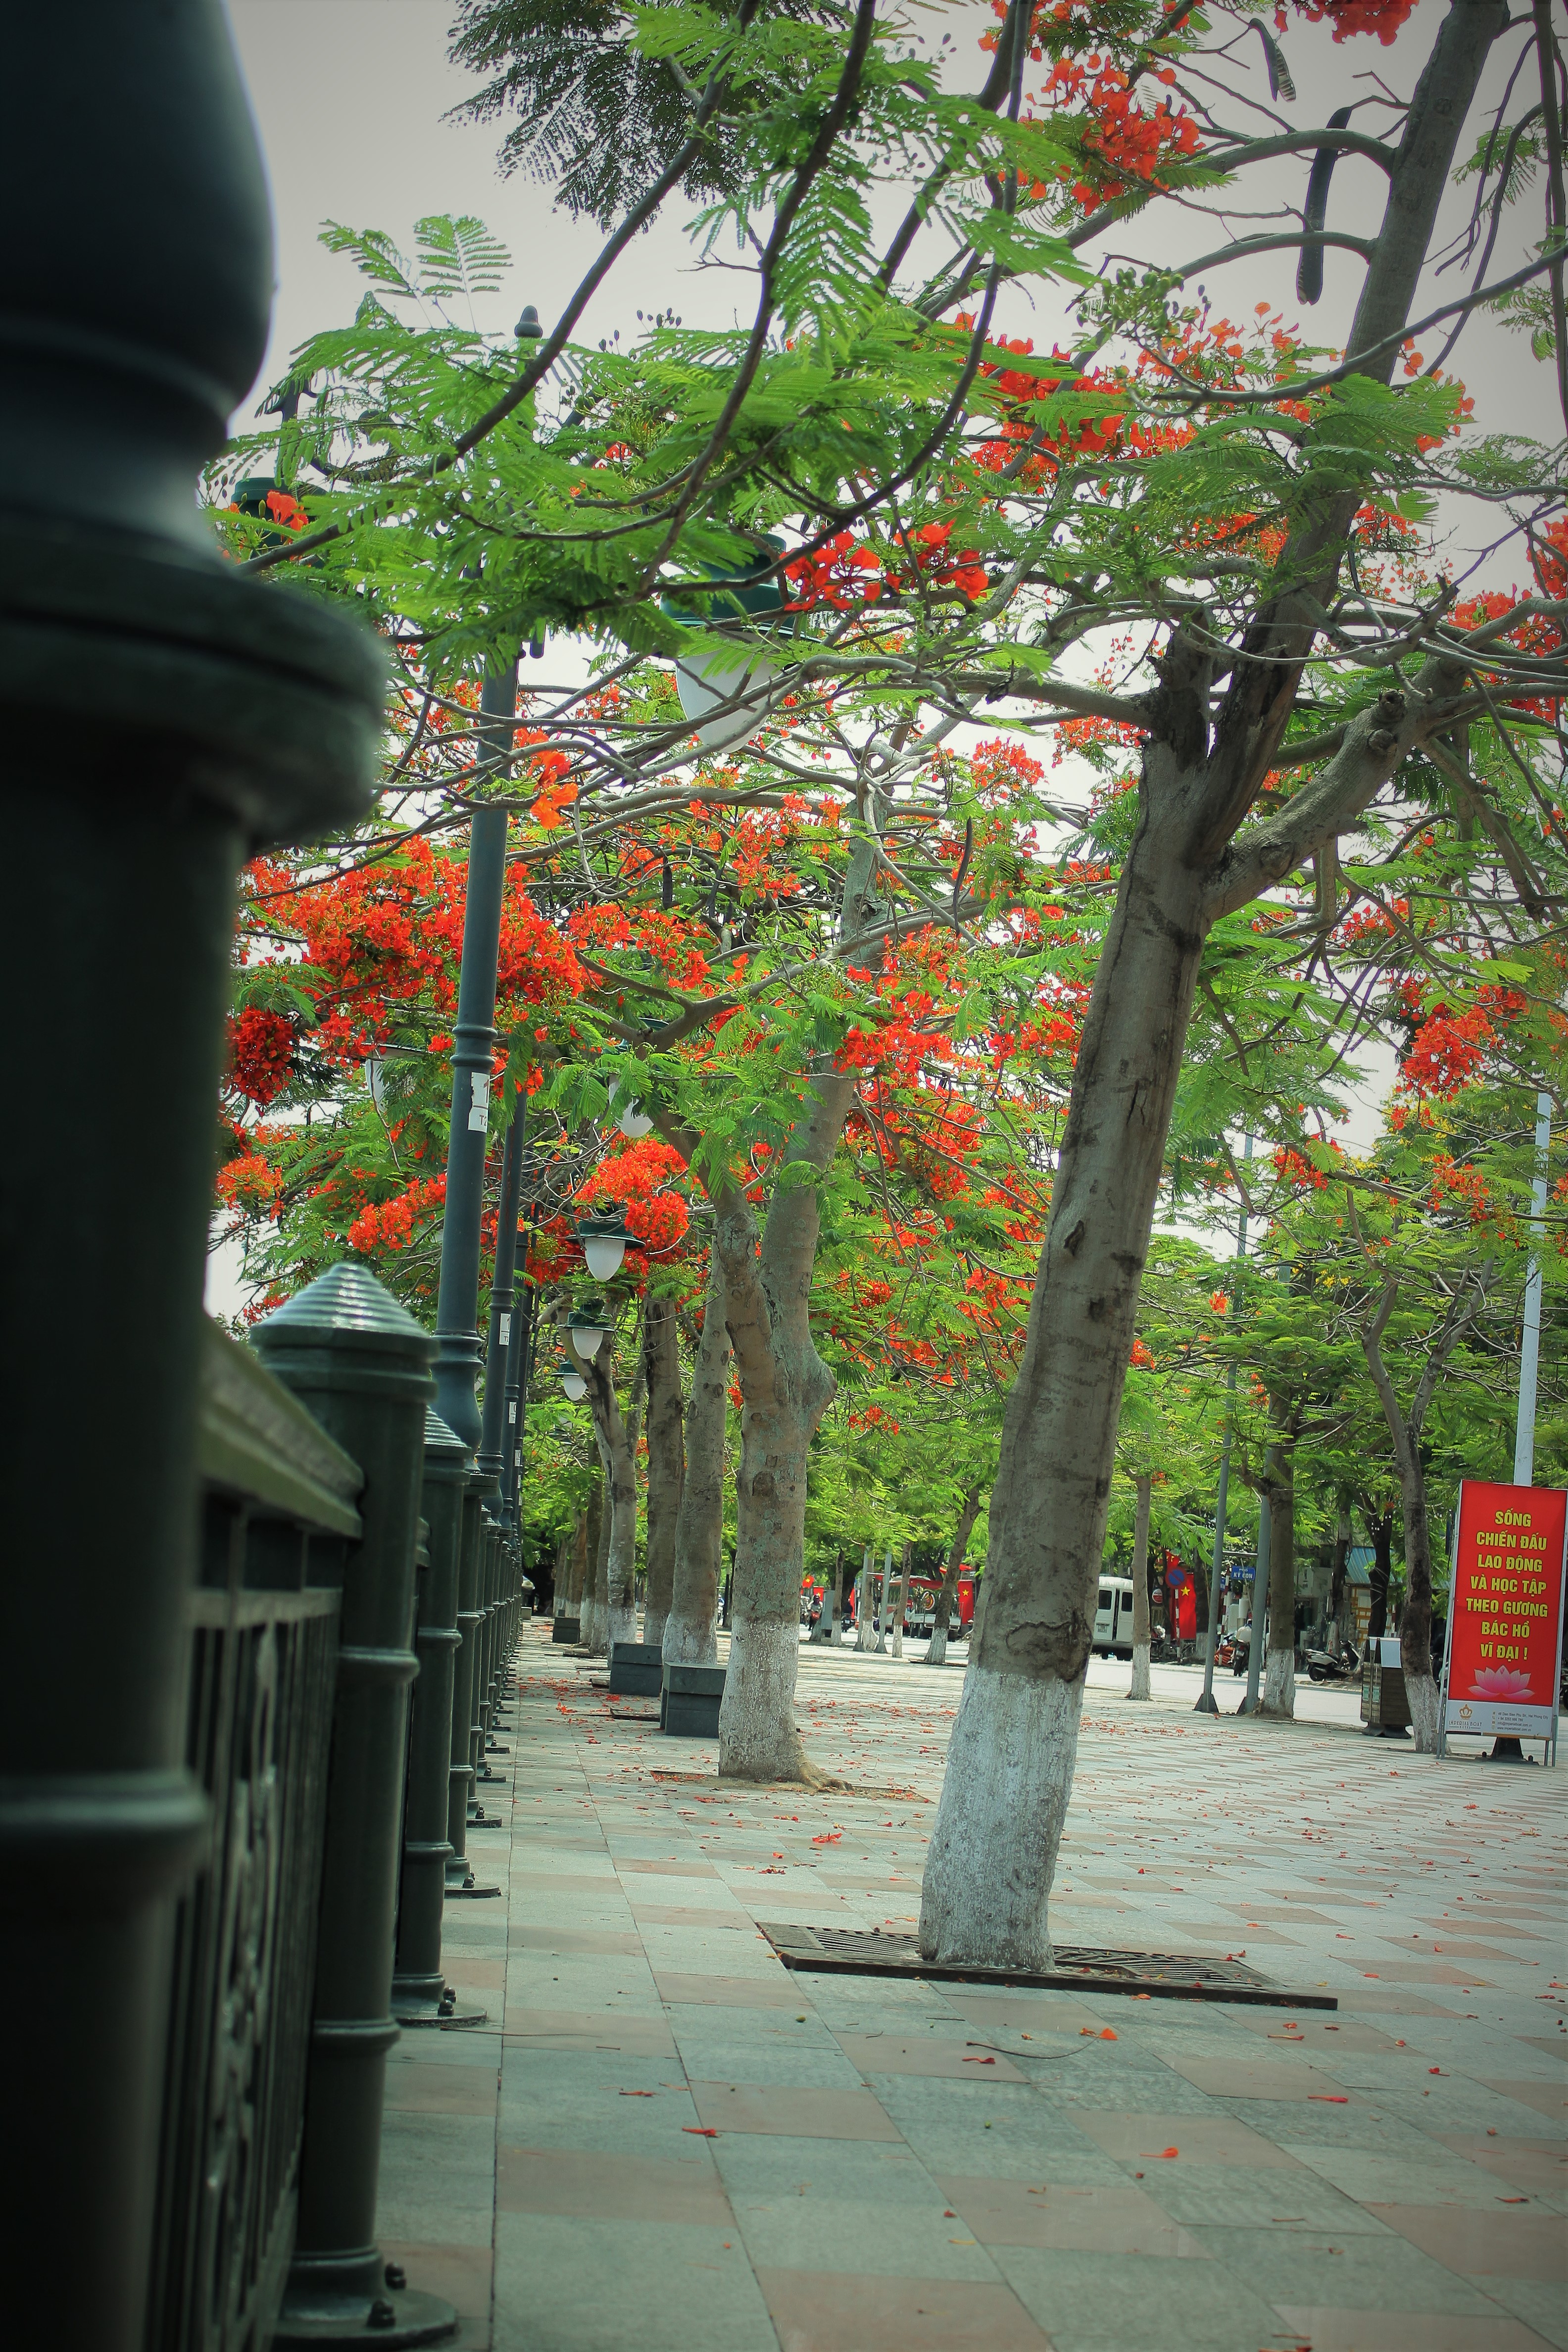 Người dân thành phố hoa phượng đỏ ủng hộ lựa chọn giải pháp bảo đảm an toàn nhưng không “lạm sát” cây xanh - Ảnh 16.